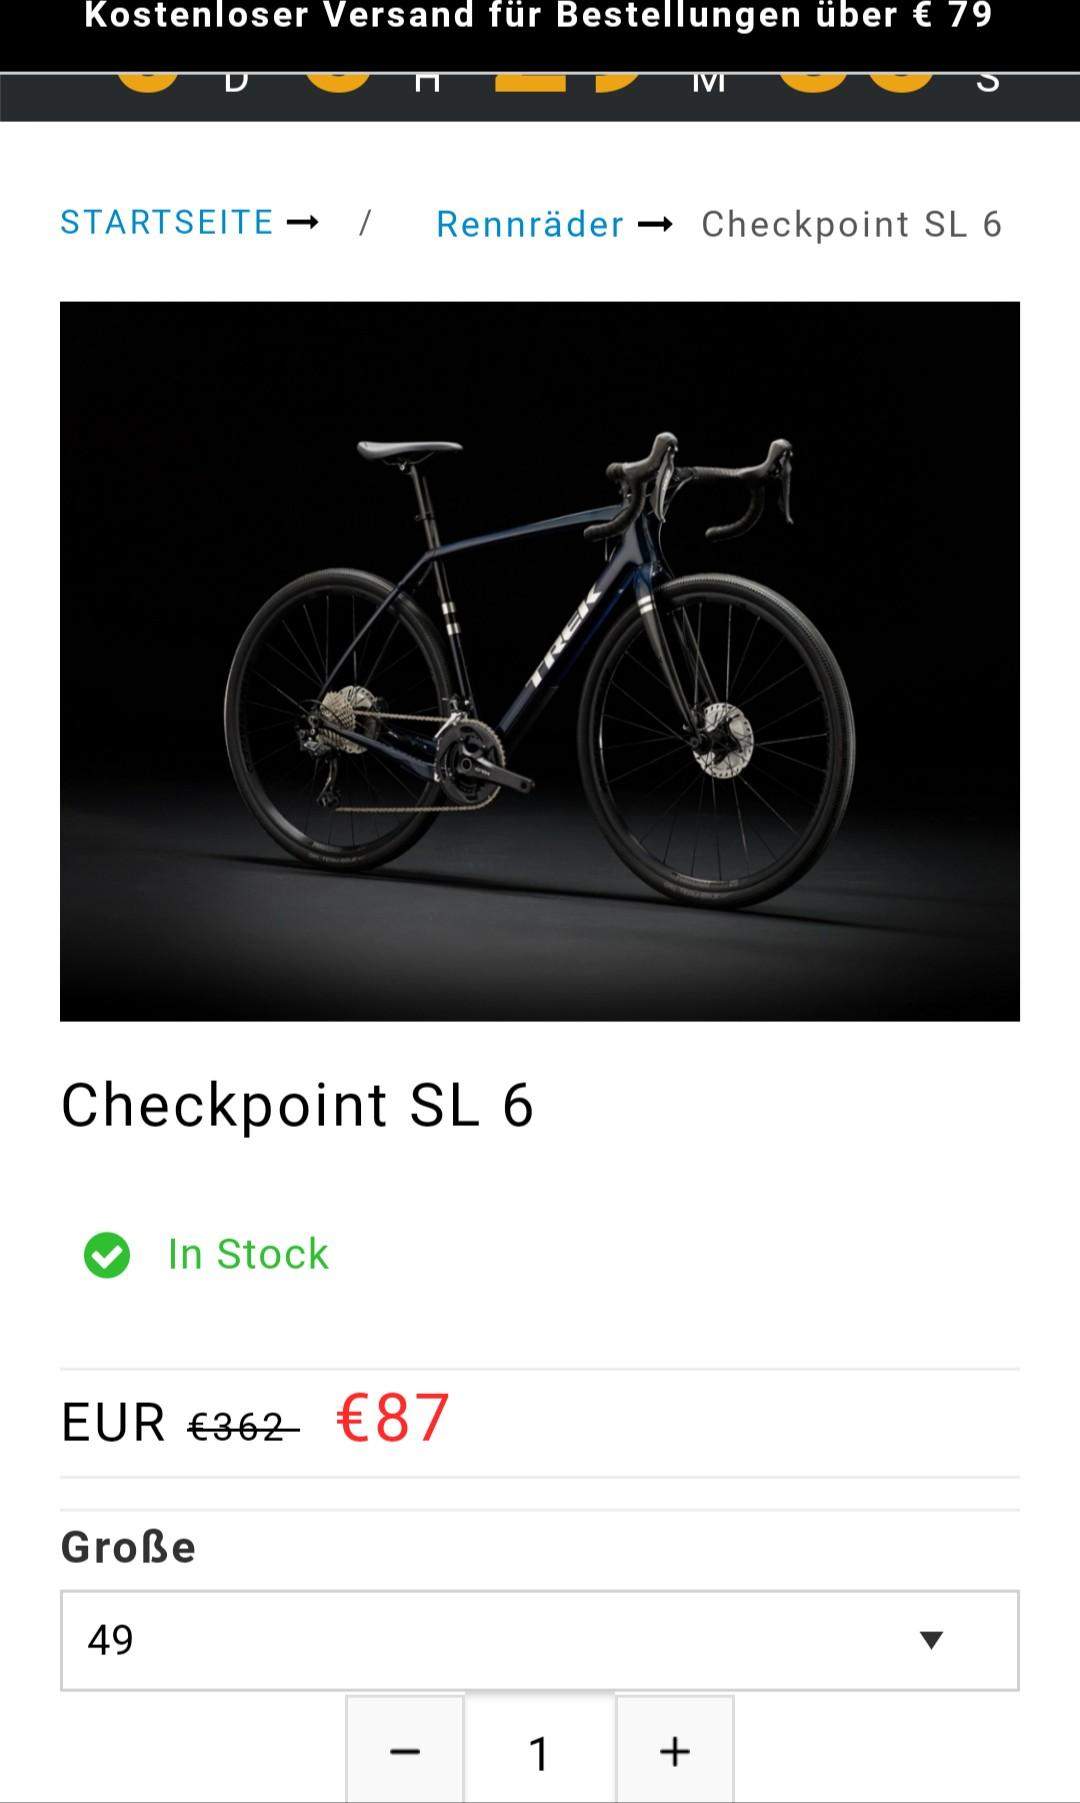 Soll ich das Fahrrad kaufen? (Mountainbike, kaufentscheidung)